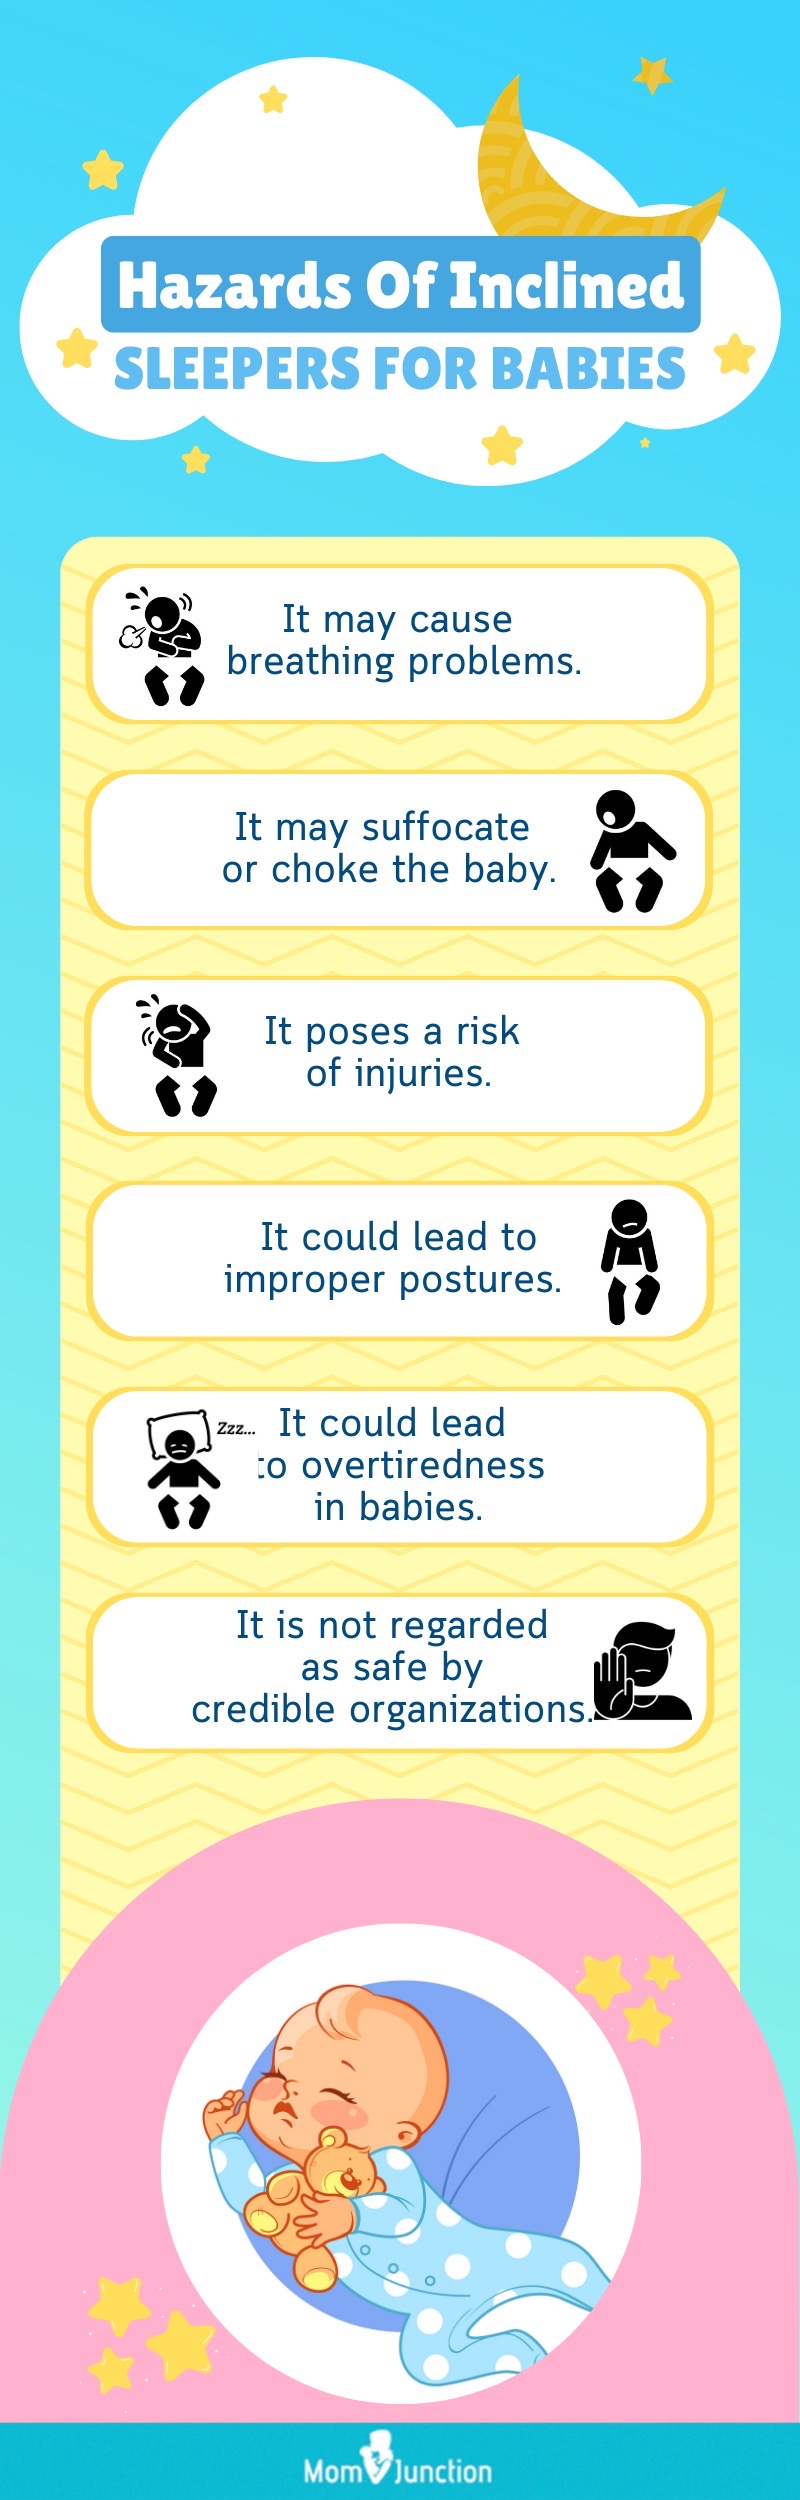 婴儿斜枕的危害(信息图)